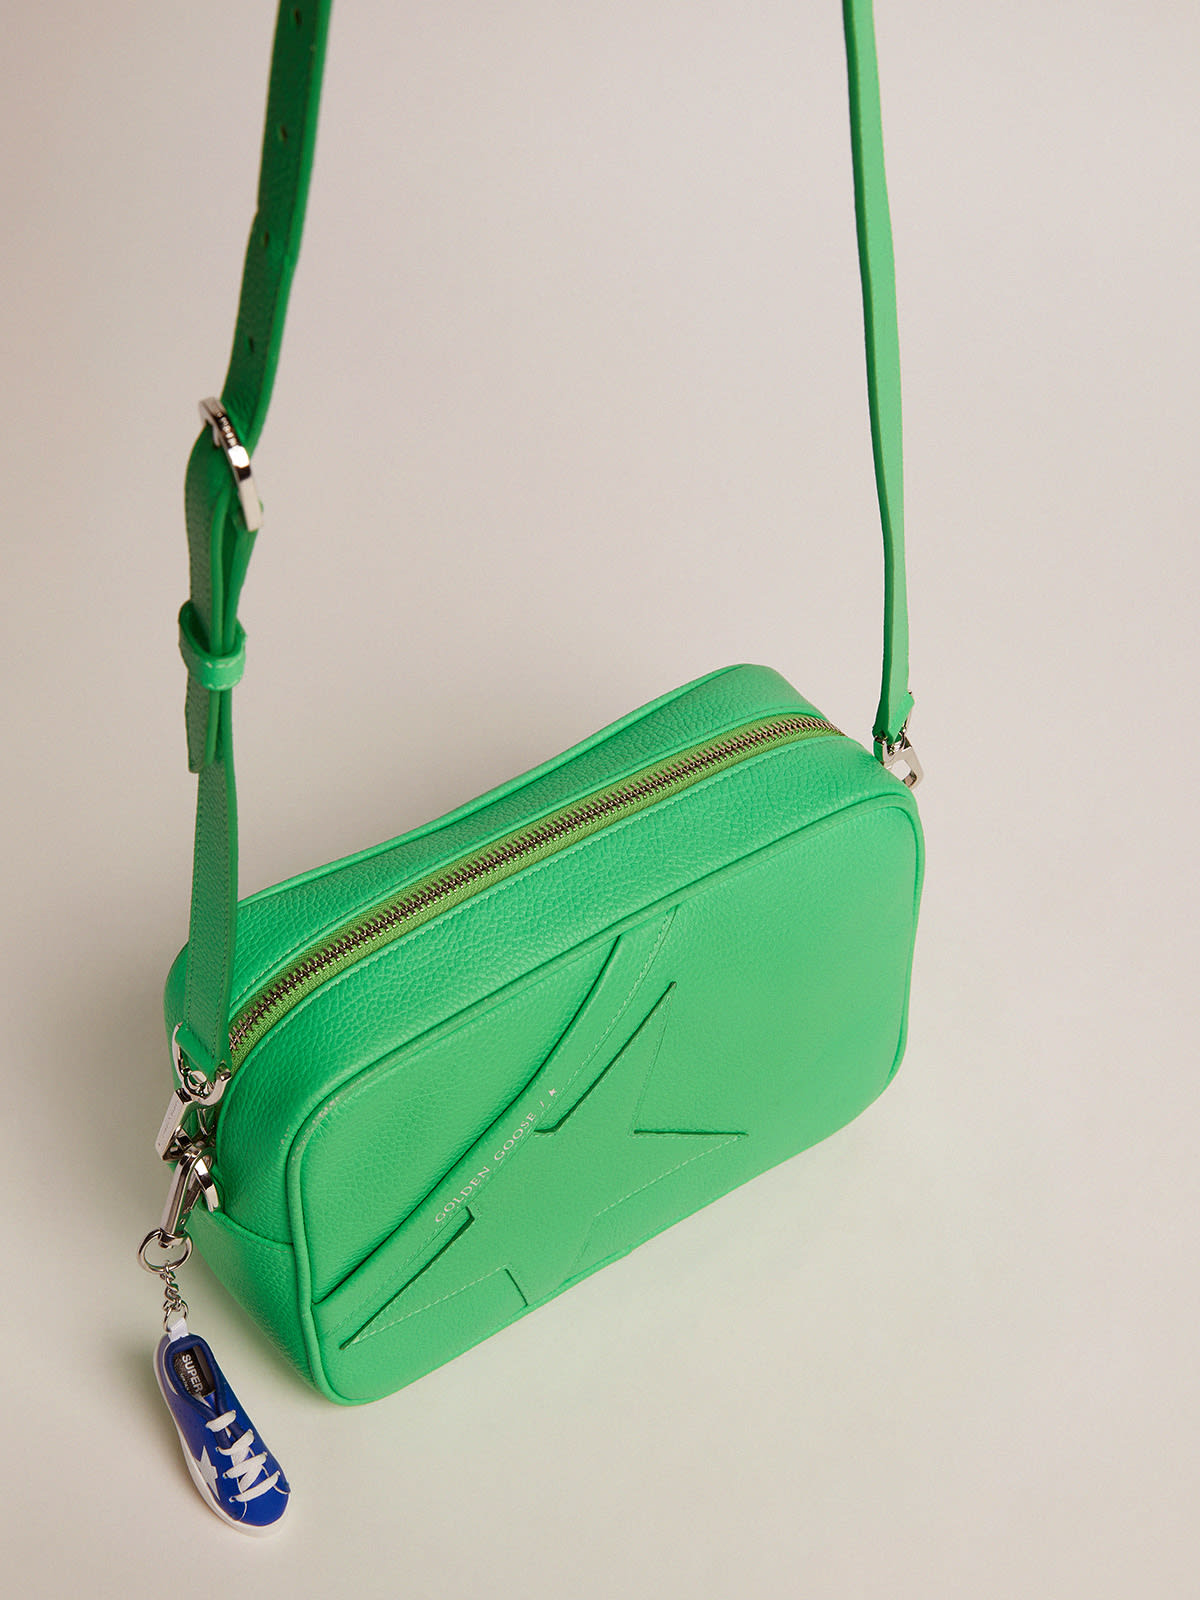 Golden Goose - Bolso Star Bag de piel martillada color verde flúor y estrella tono sobre tono in 